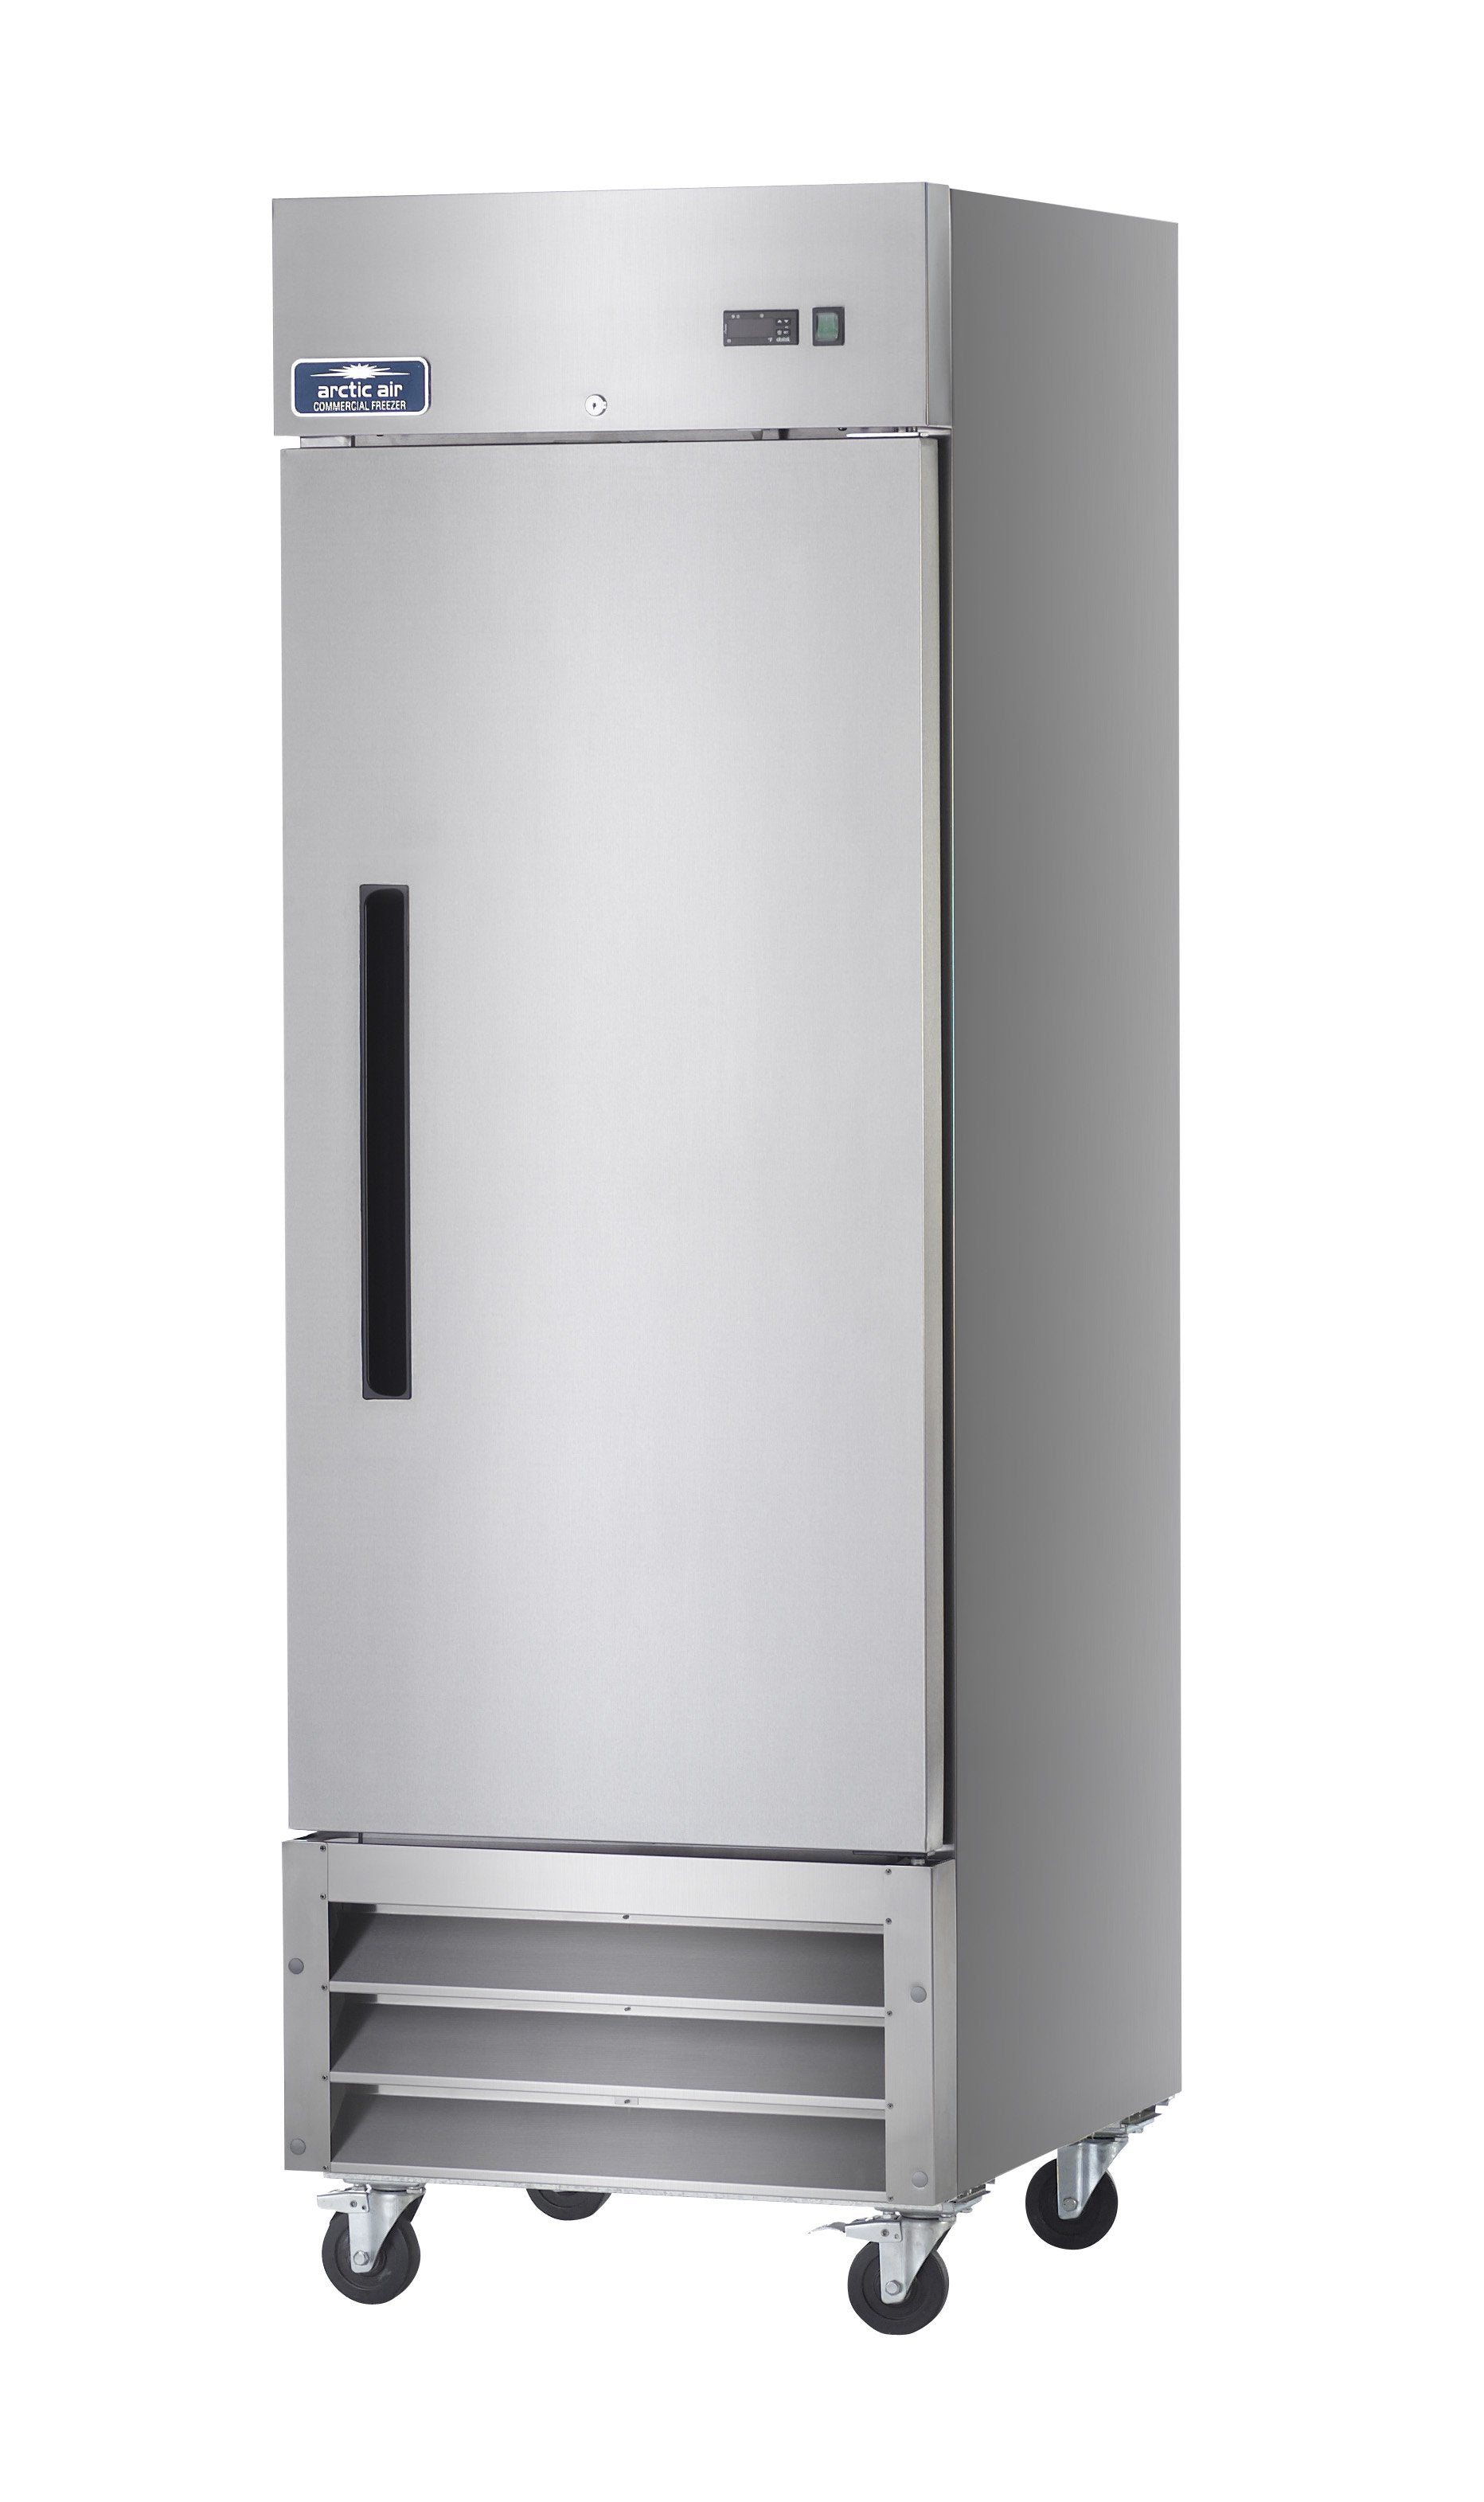 Arctic Air AF23 Single Door Reach-In Refrigerator